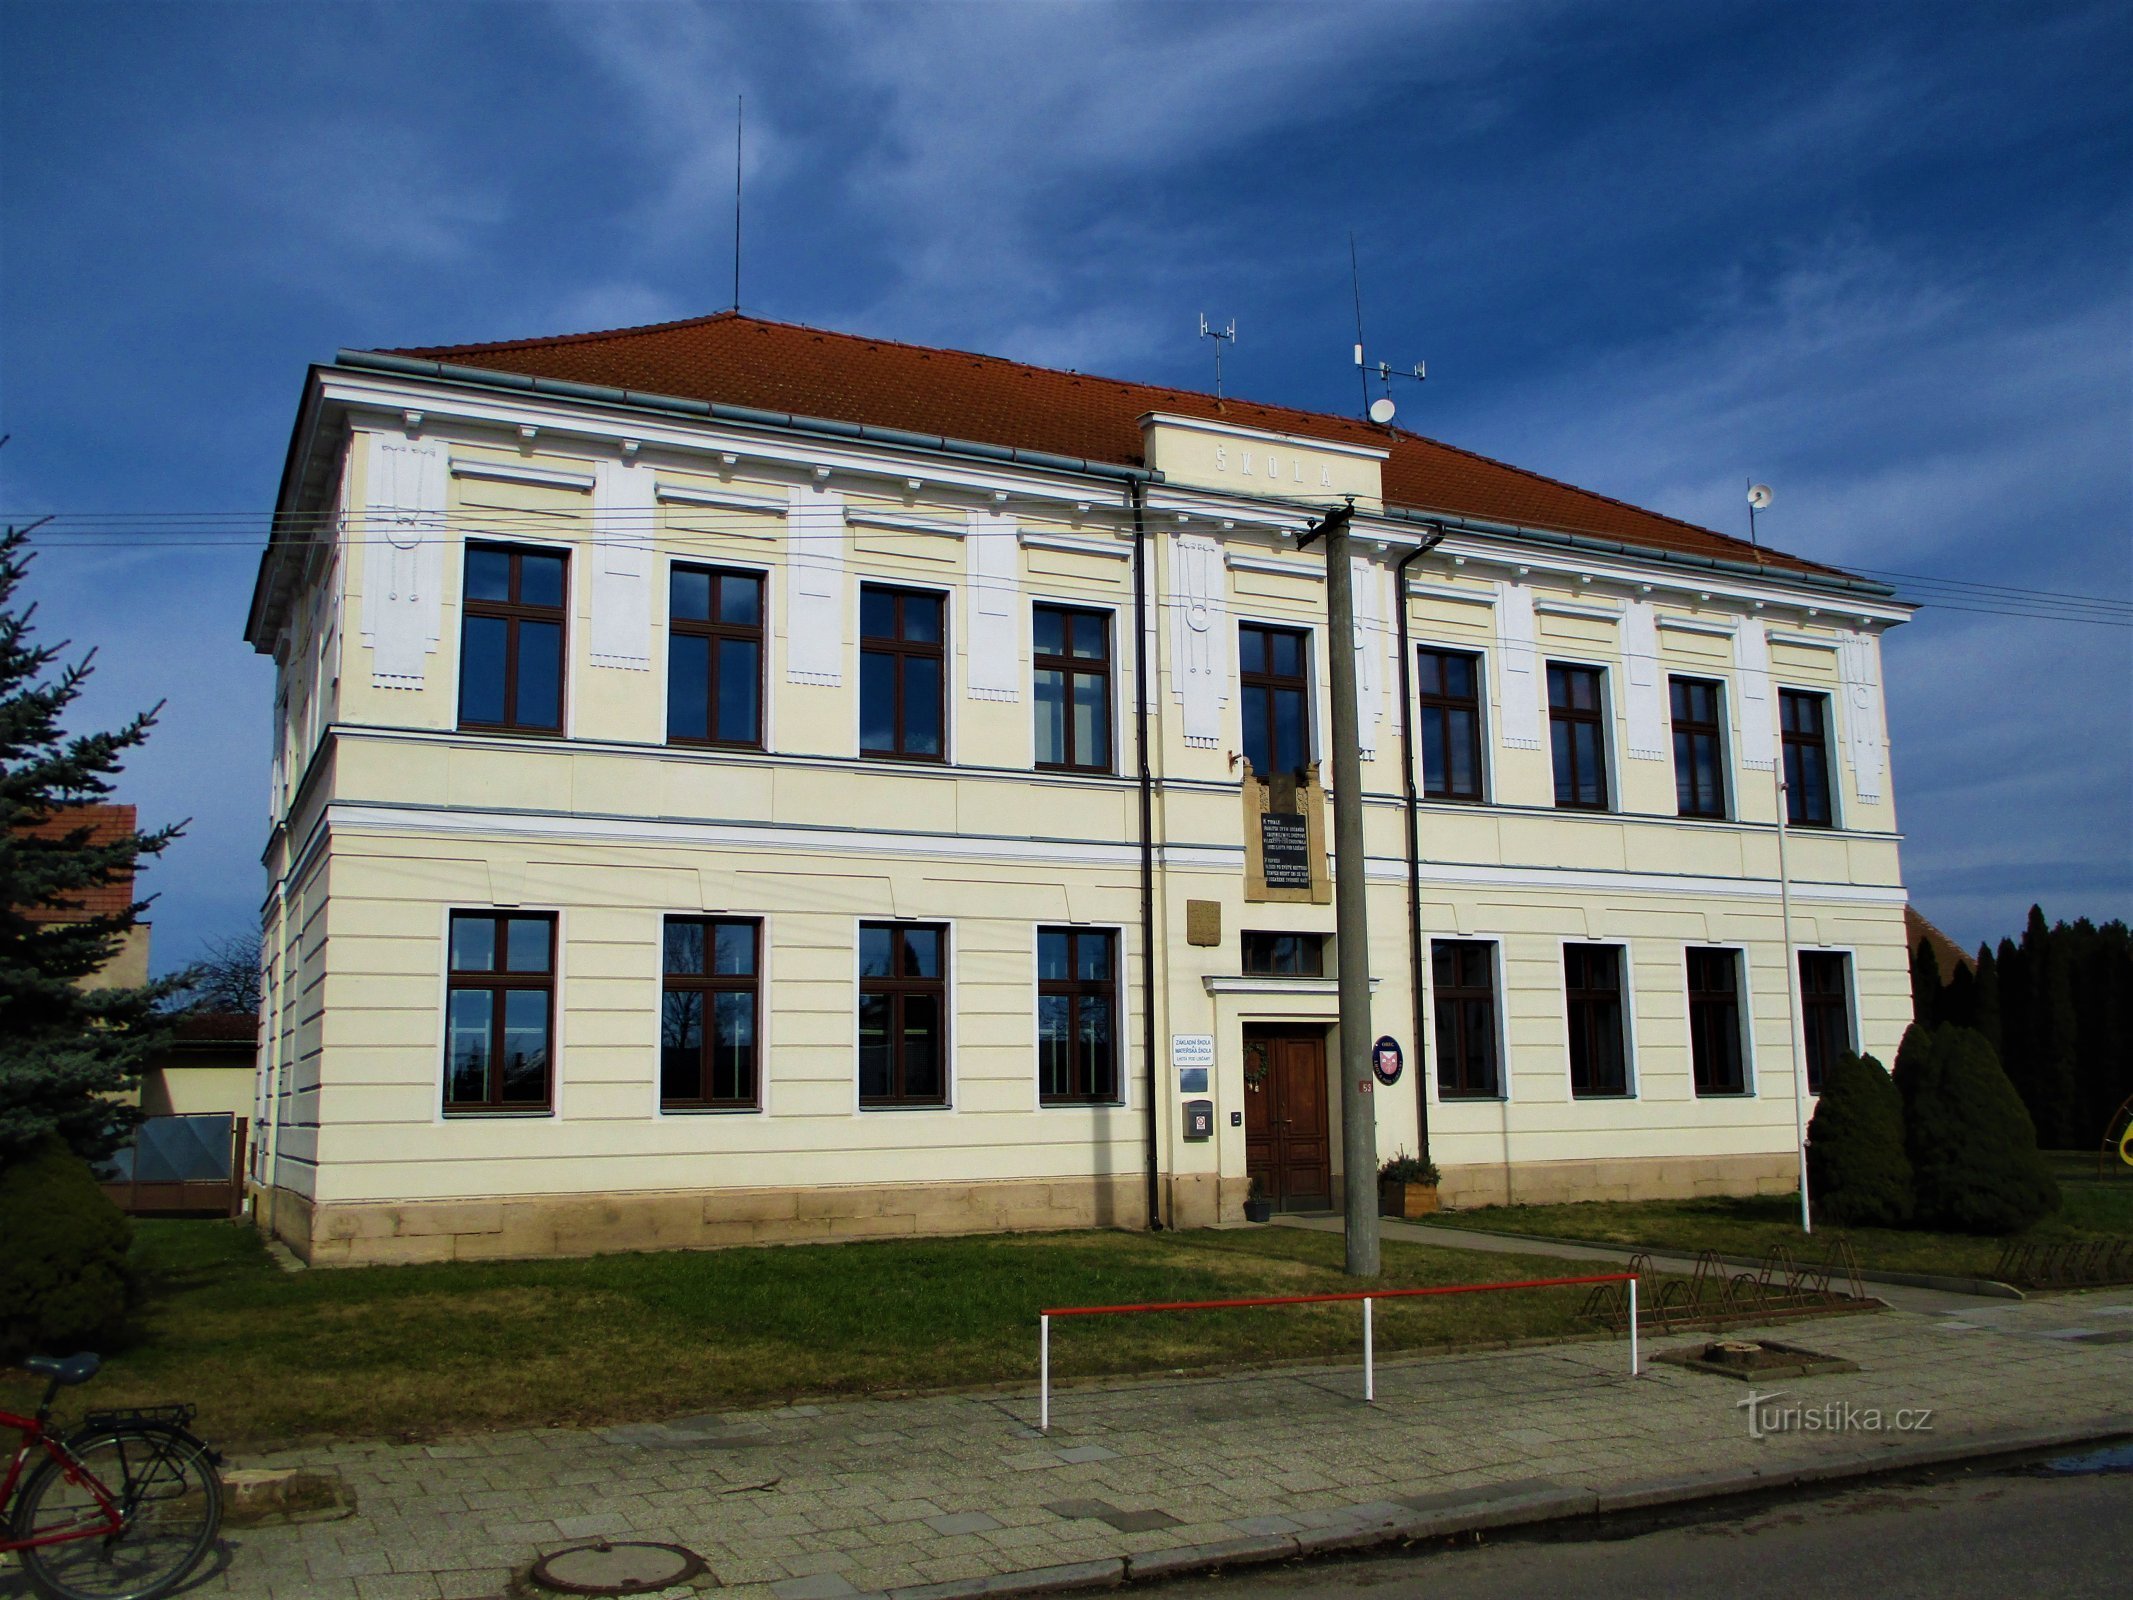 Scuola (Lhota pod Libčany)